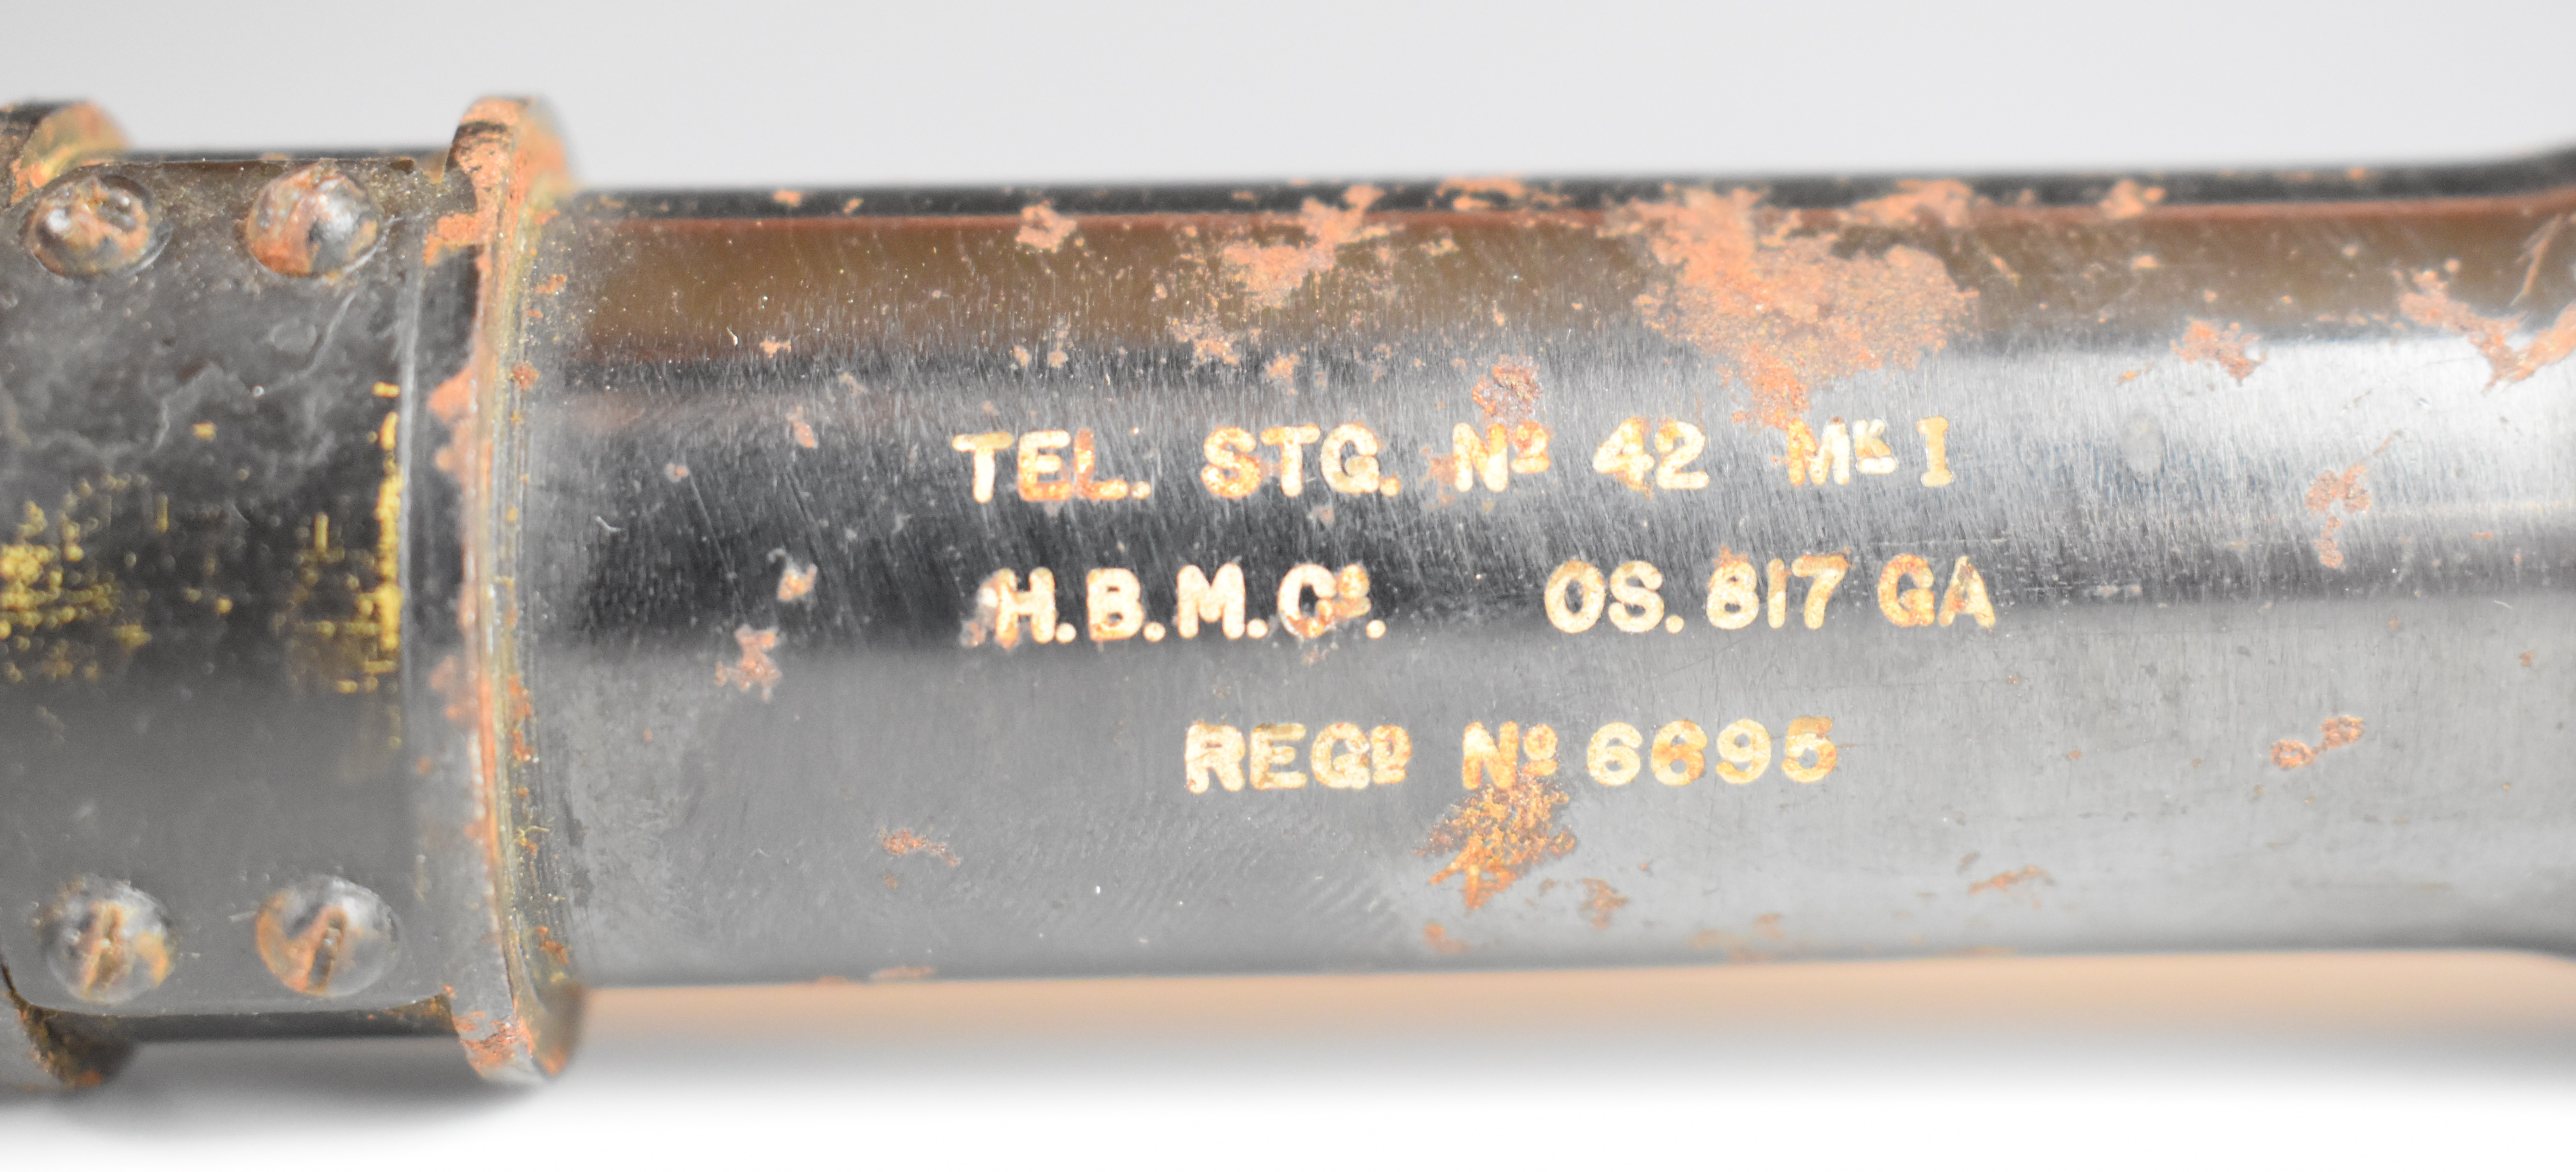 WWII No. 42 Mk I scope stamped 'Tel Stg No 42 MK.I HBMCo OS 817 GA RegD No 6695', 28cm long. - Image 3 of 5